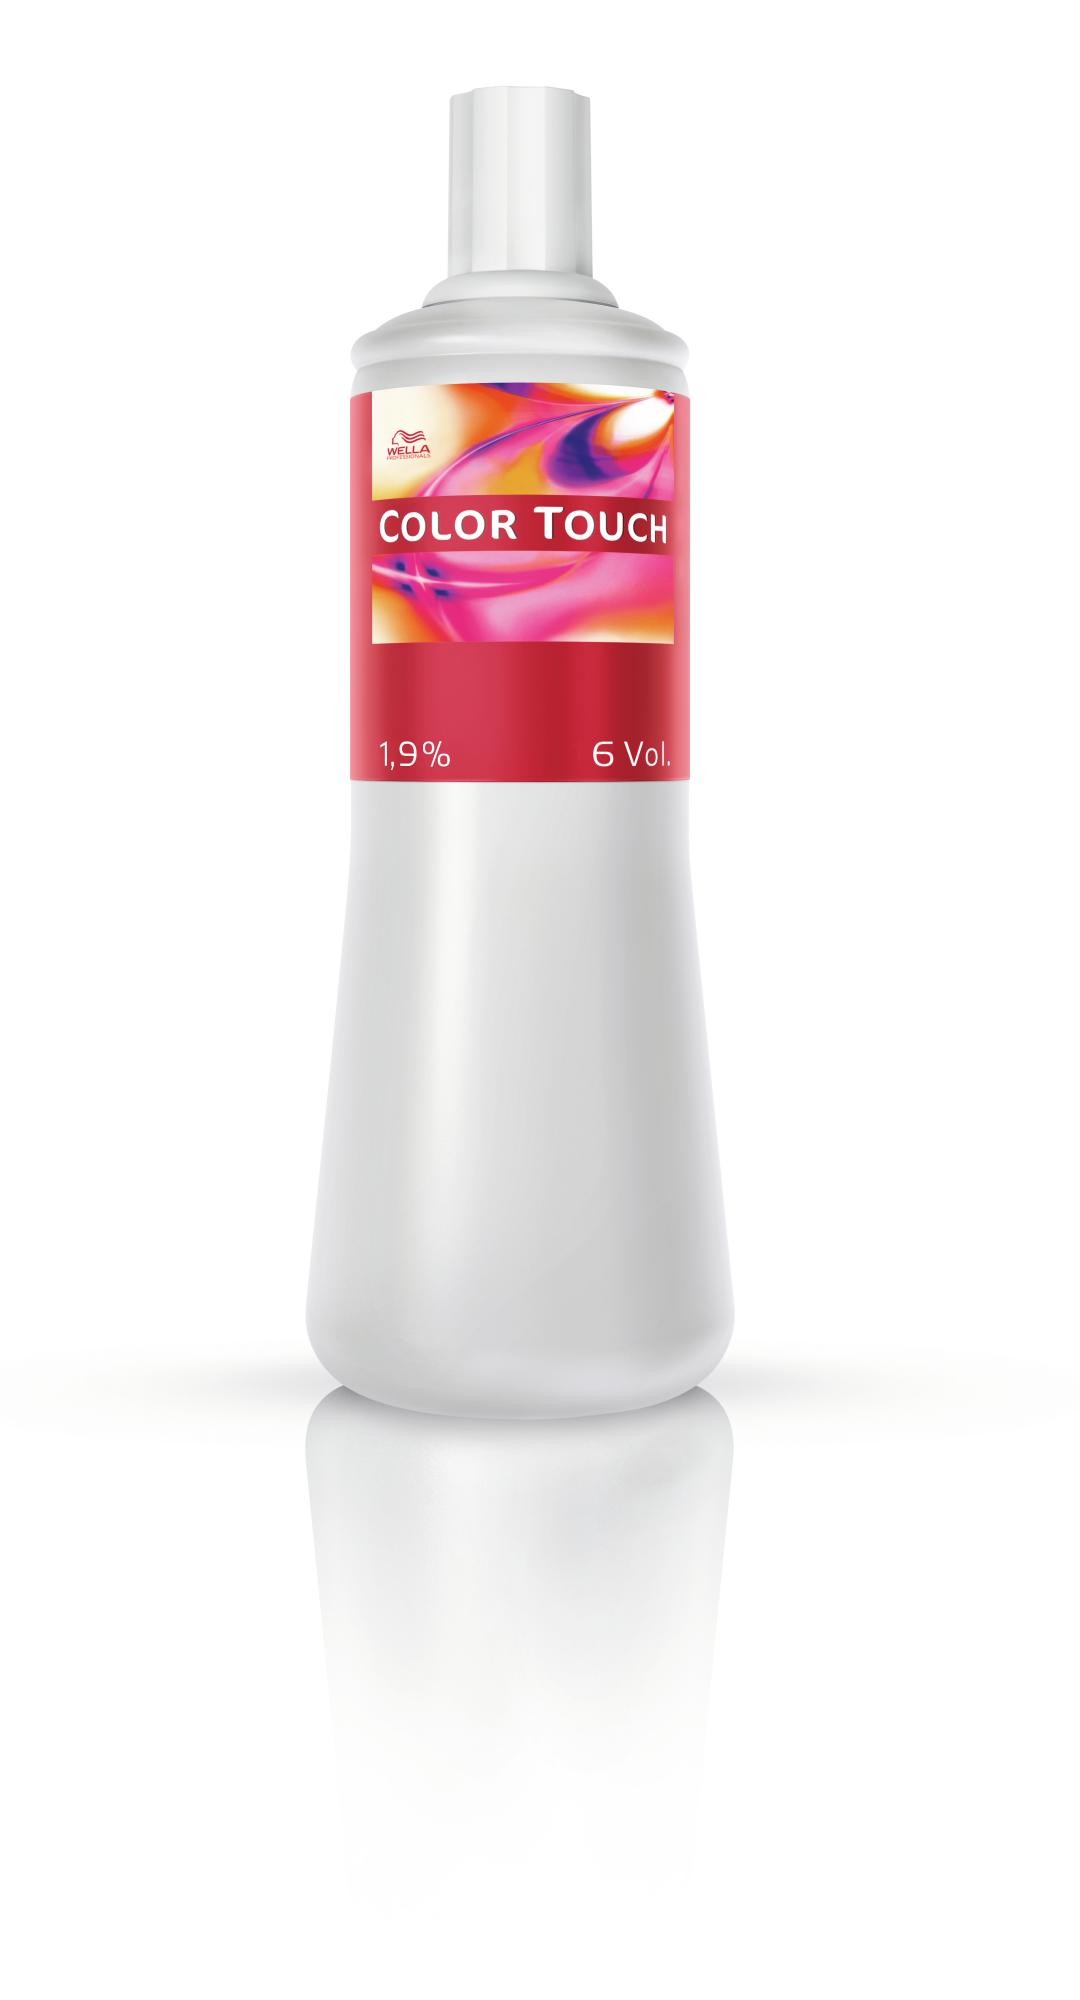 Wella Color Touch Emulsione 1.9% 6 Vol. 1000ml